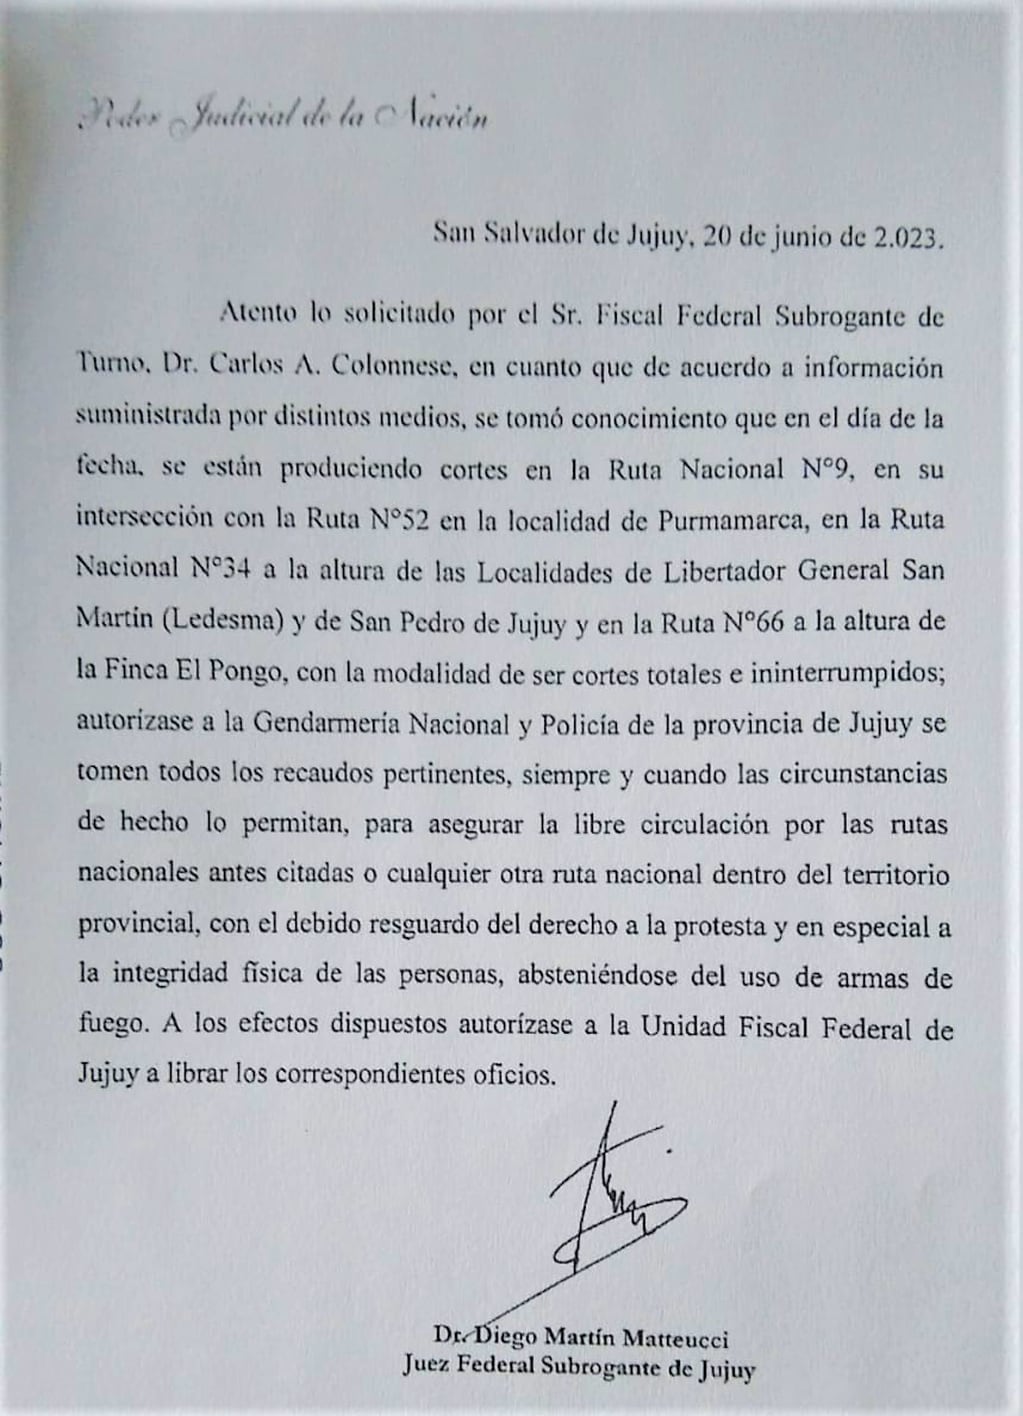 El juez federal Diego Martín Matteucci, autorizó finalmente a la Gendarmería Nacional a "tomar los recaudos necesarios" para liberar las rutas nacionales tomadas por piqueteros en territorio jujeño.